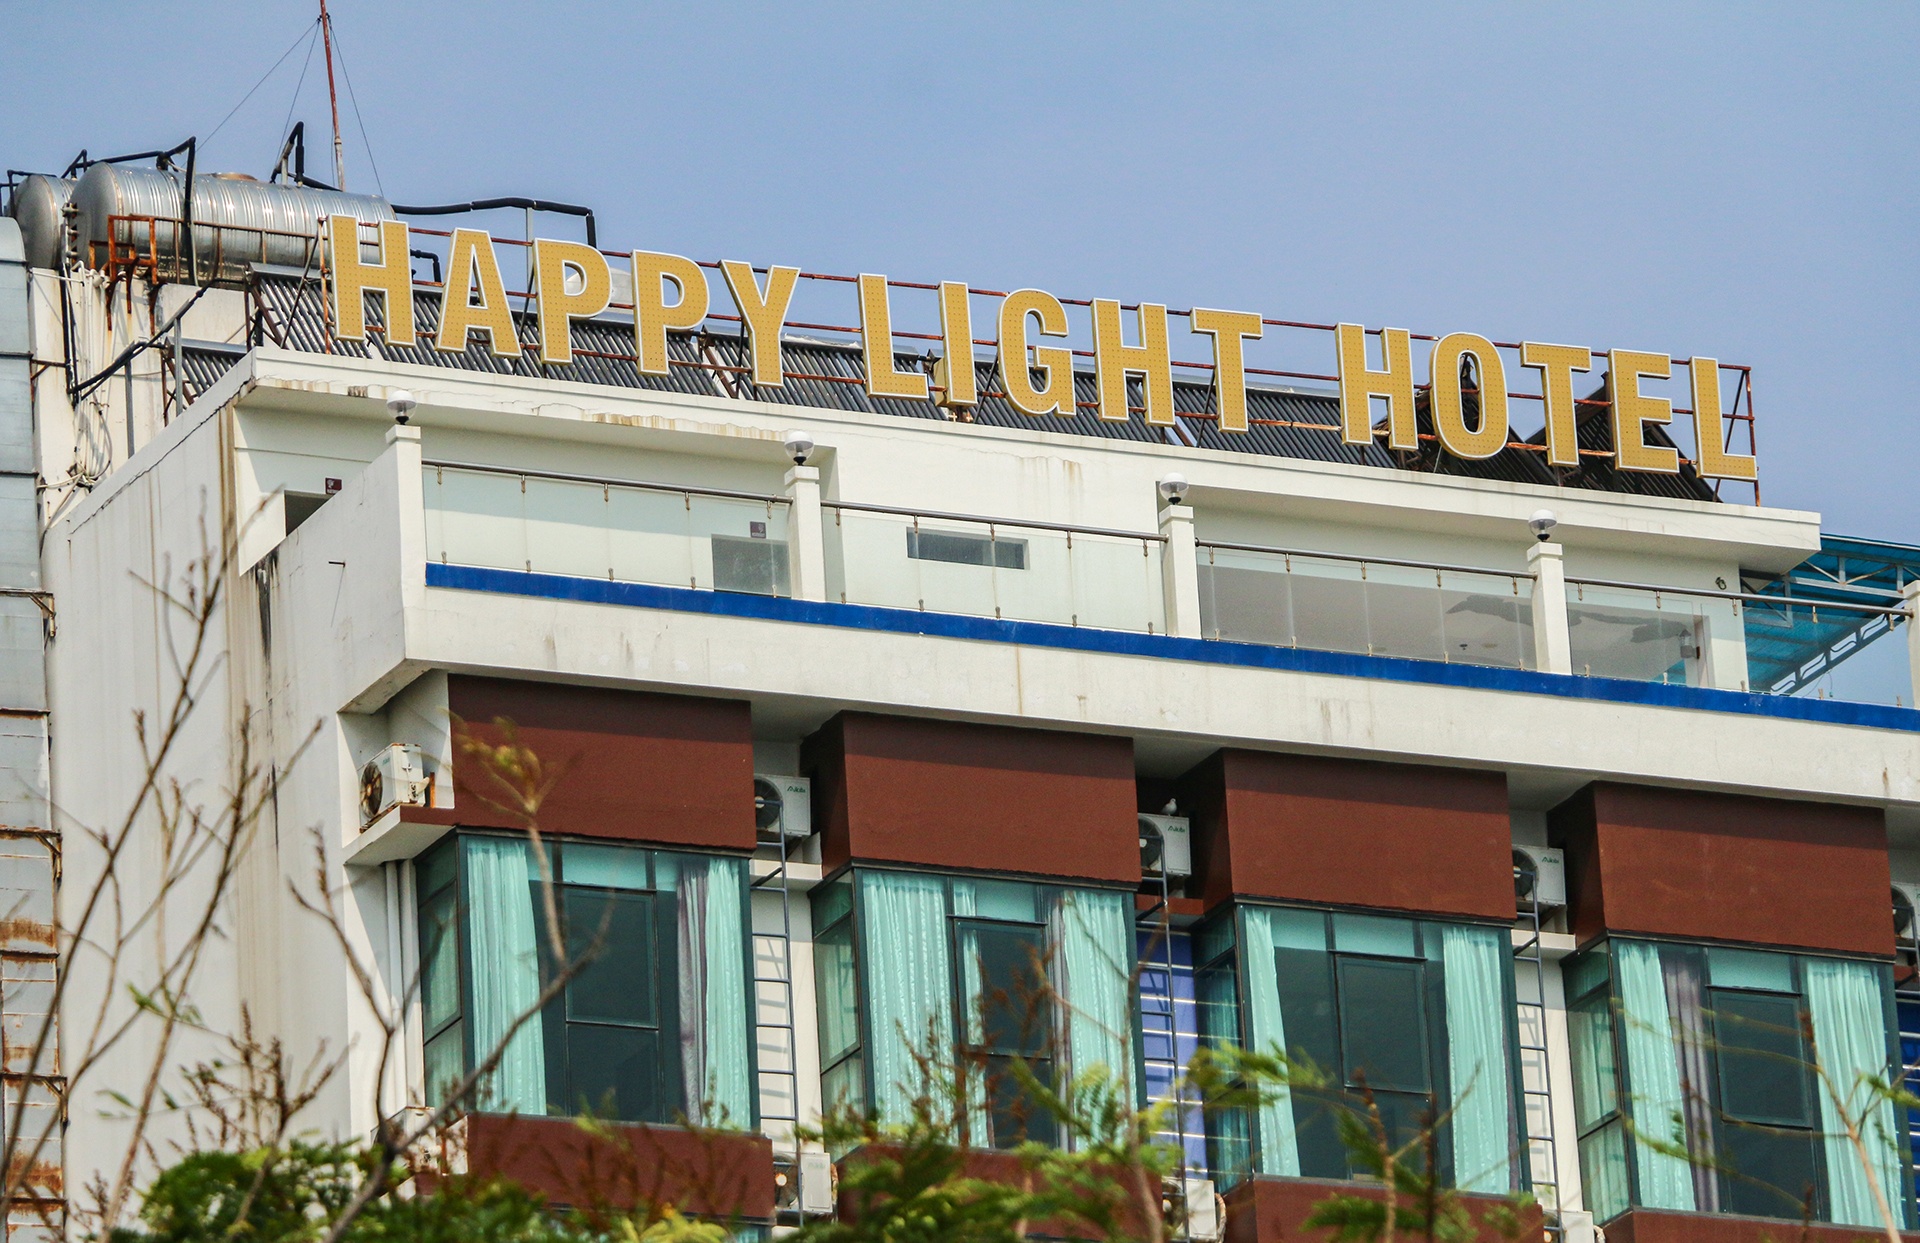 Tràn lan khách sạn tự phong sao ở Nha Trang - ảnh 11